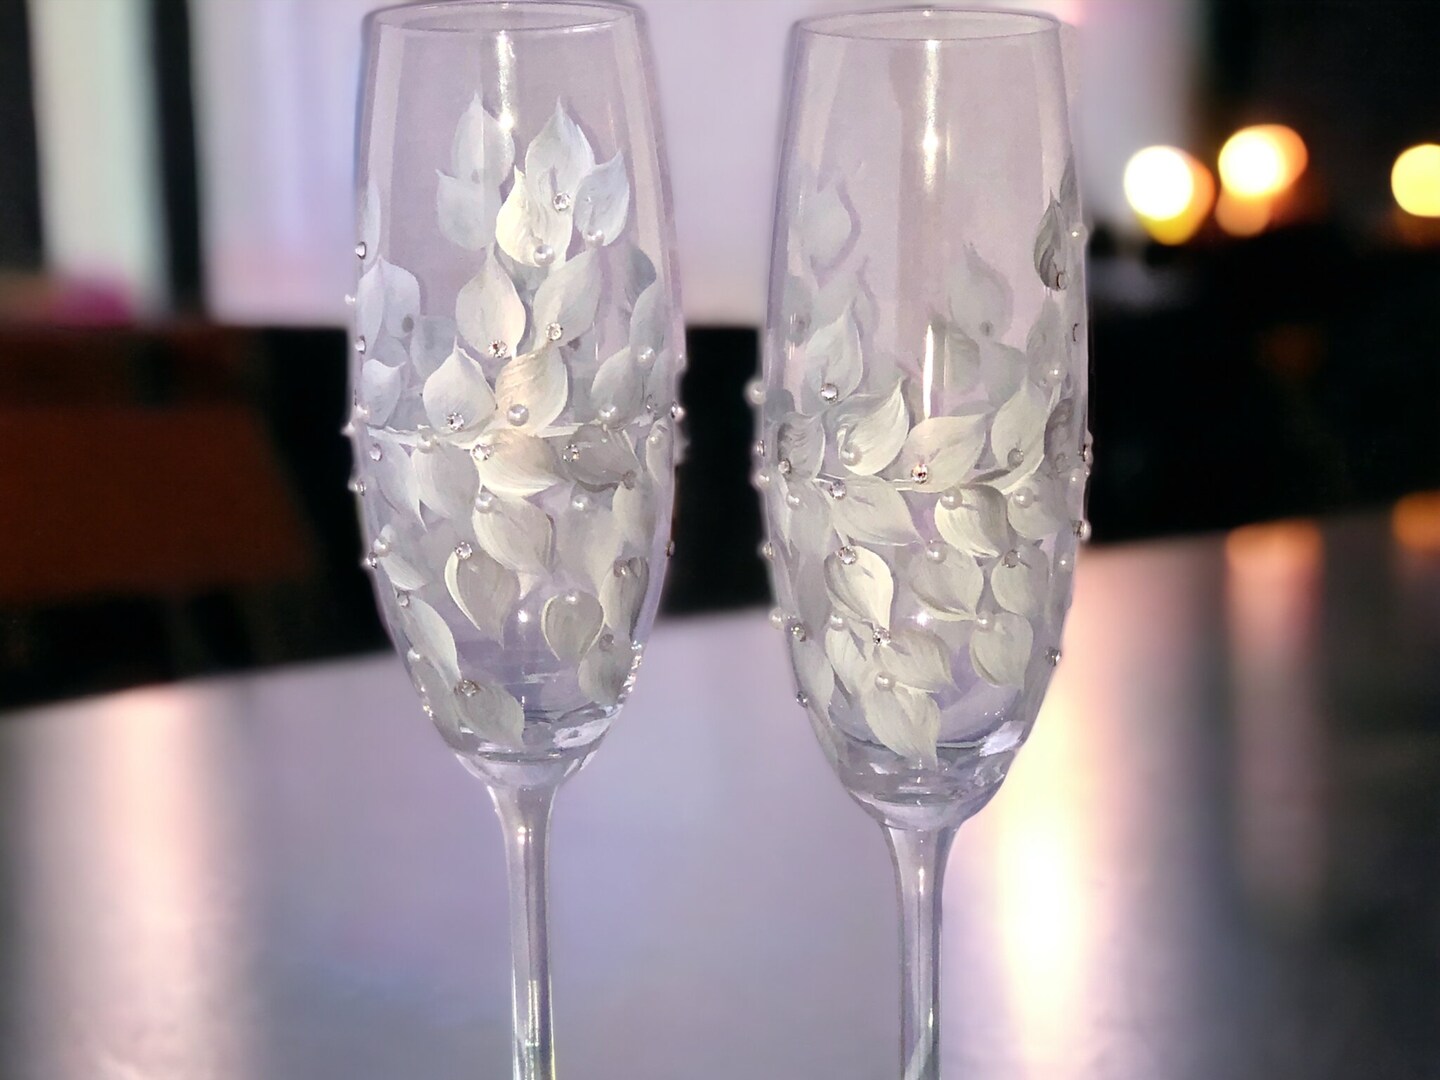 NEW SWAROVSKI Crystalline Toasting Flutes Wedding Champagne